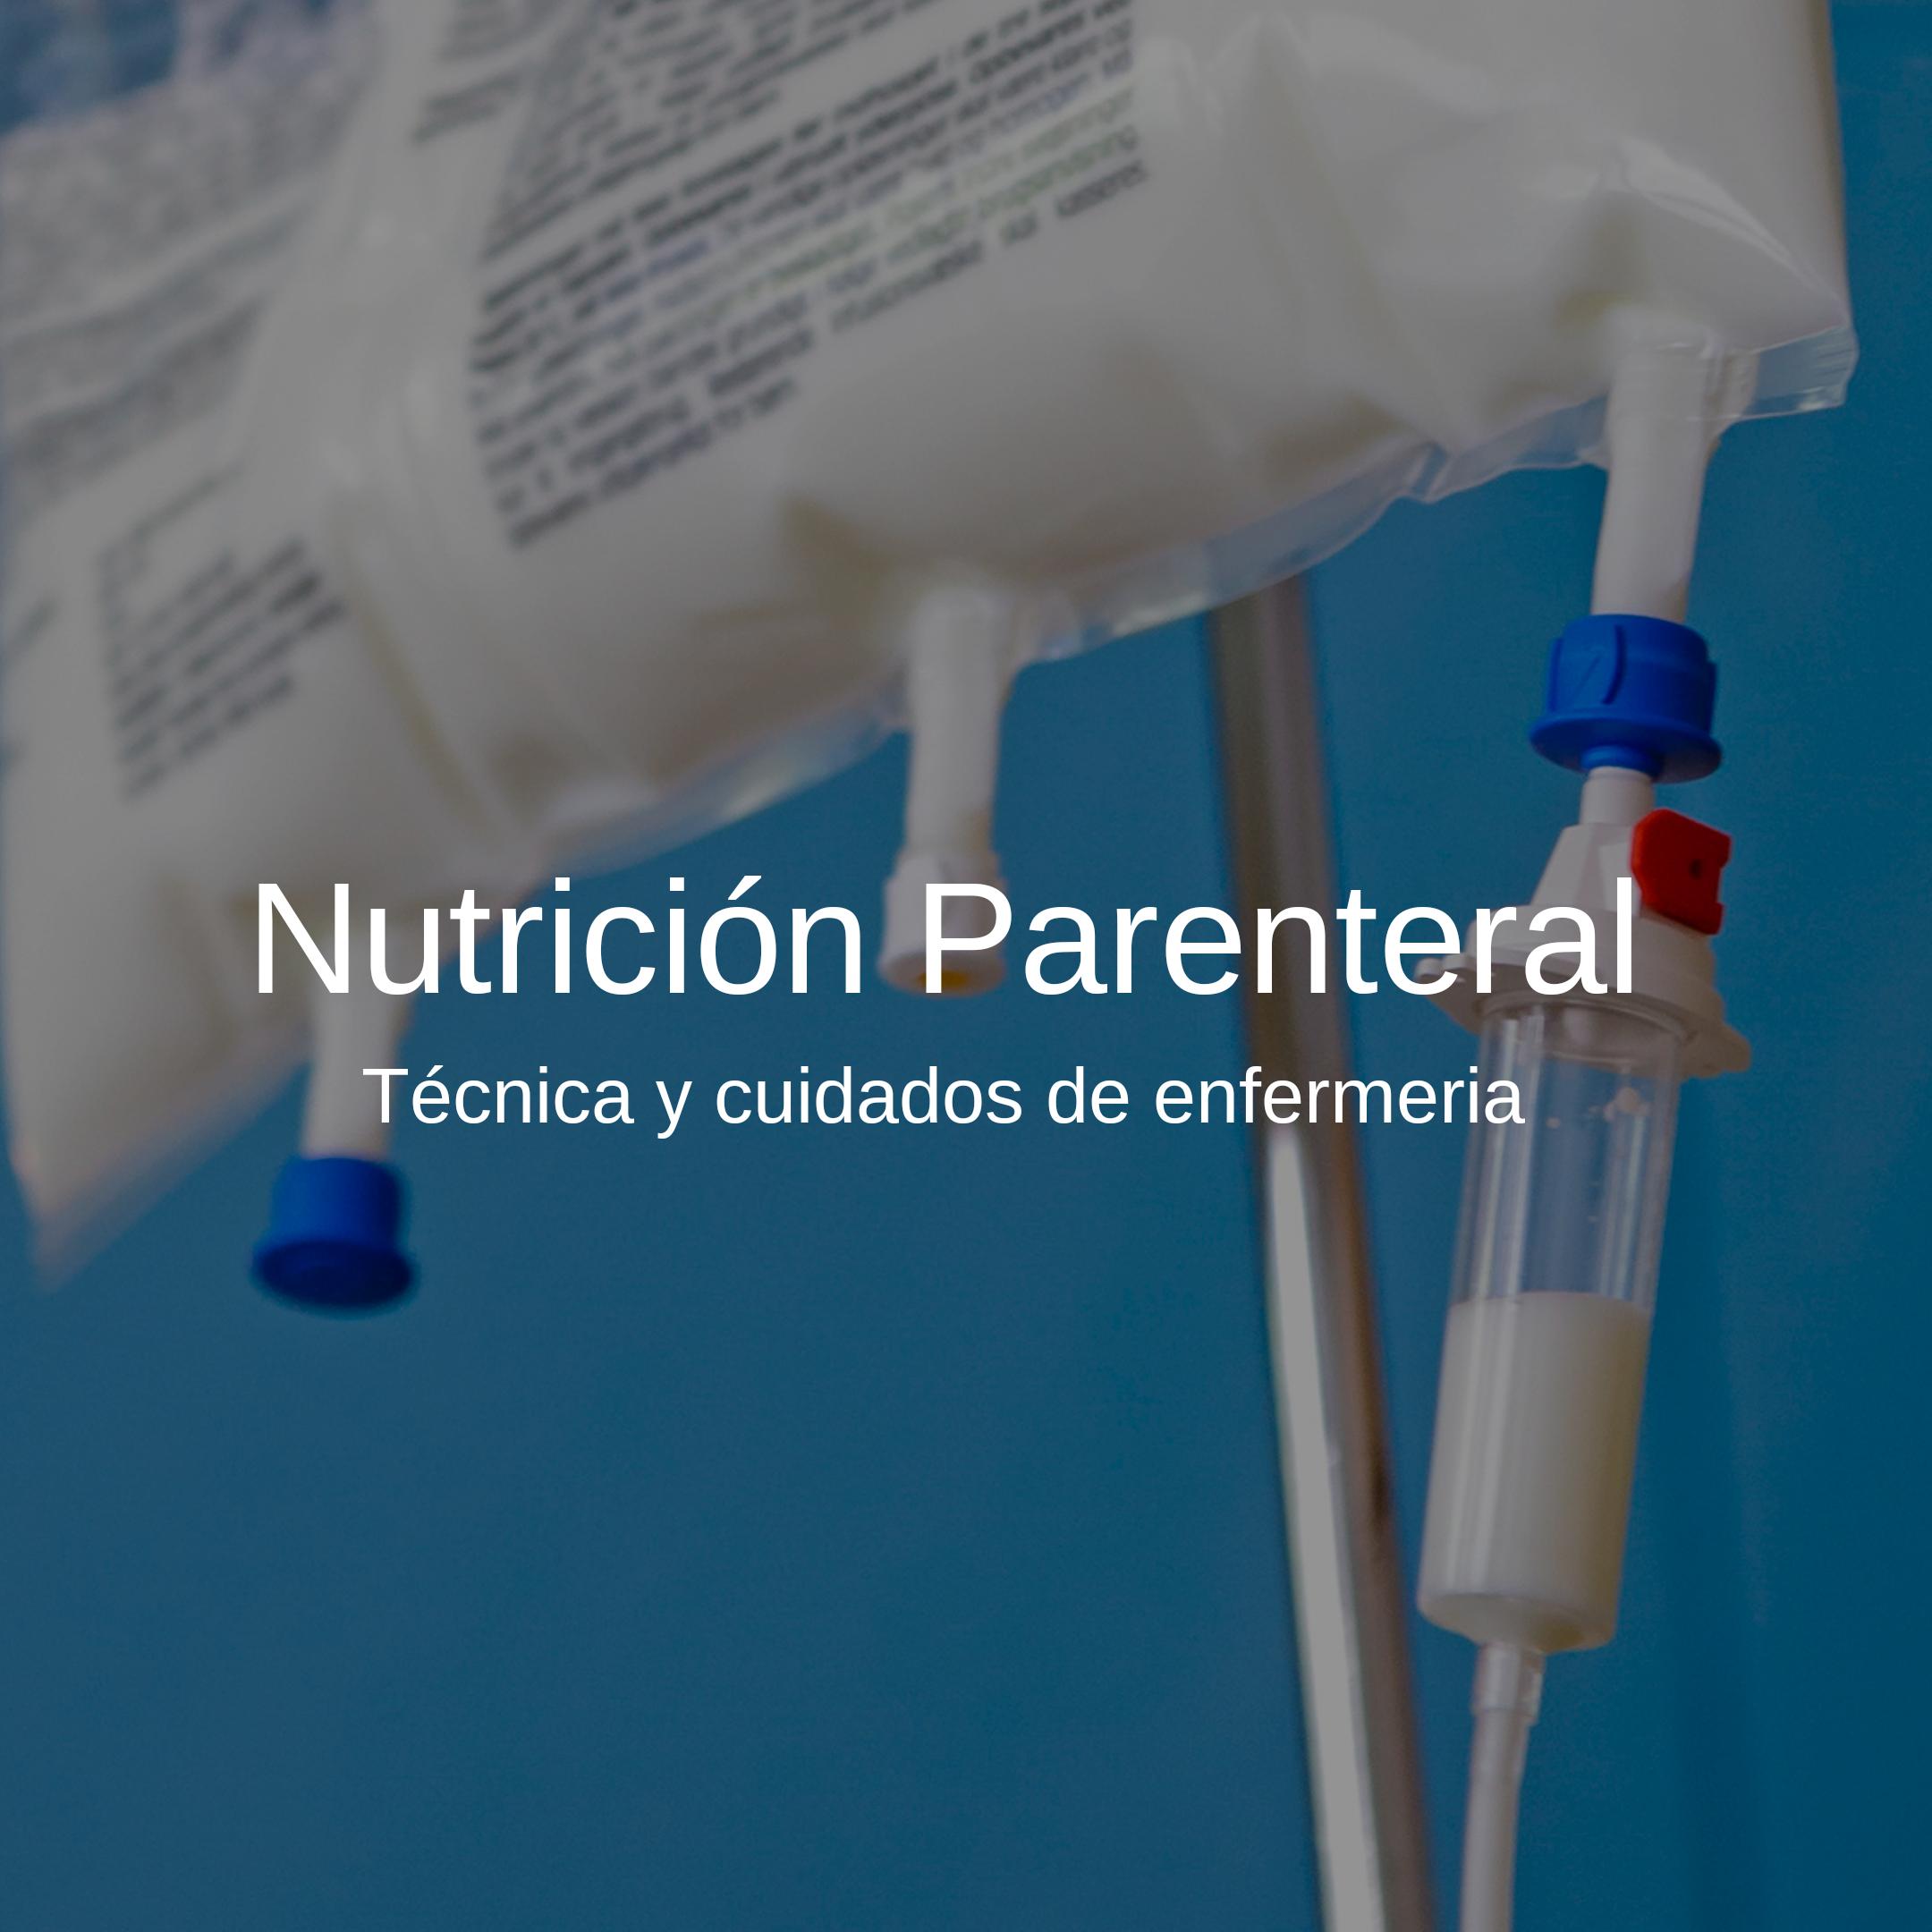 ntp en medicina - Qué pacientes necesitan nutrición parenteral